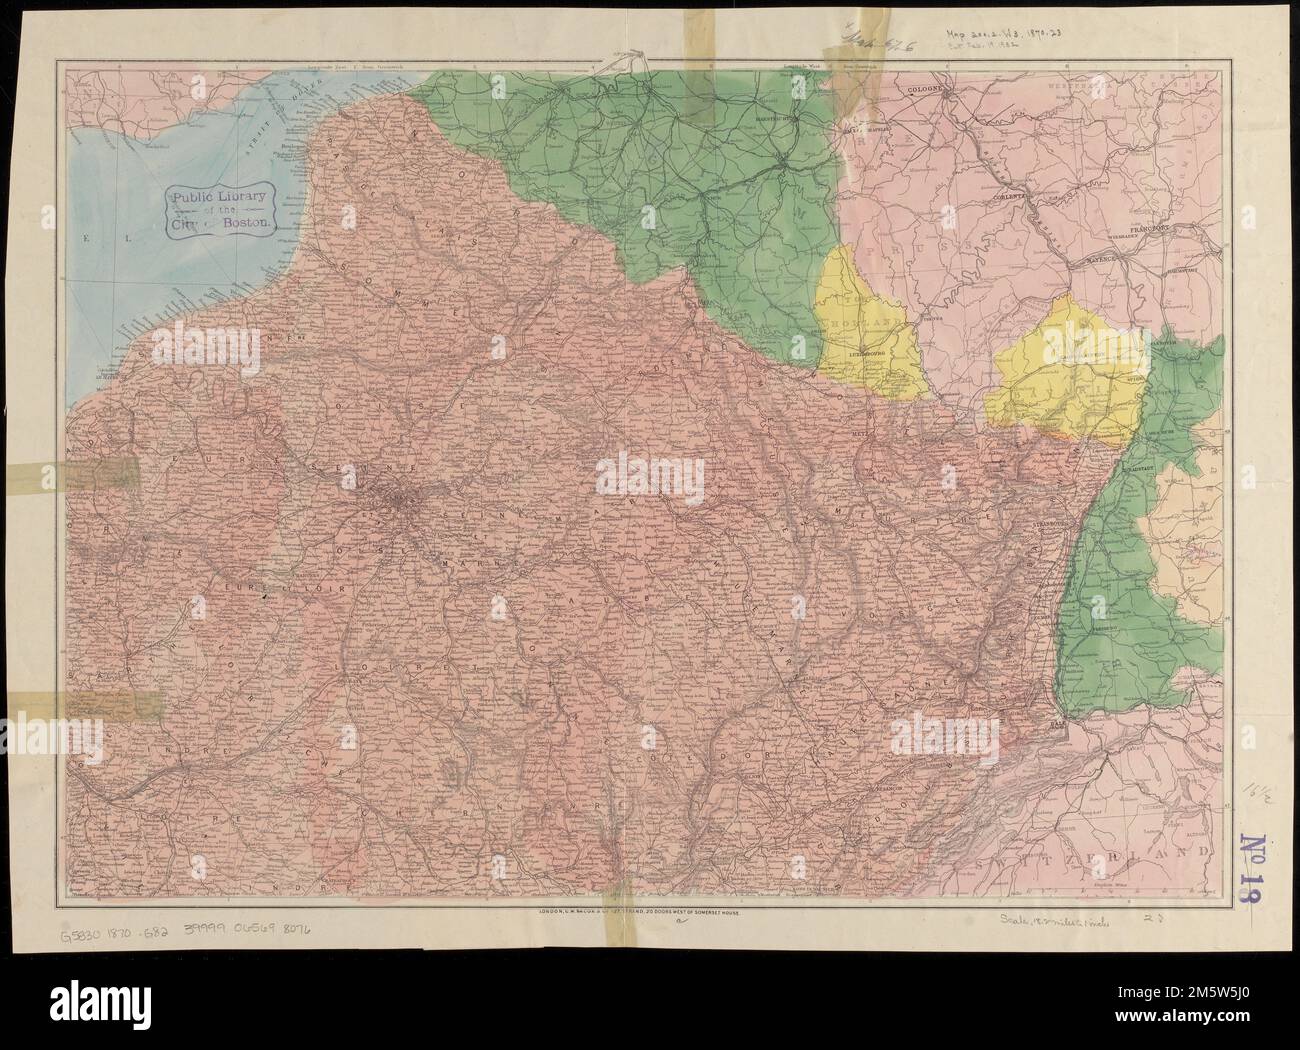 Bacon's Karte vom Kriegssitz von Paris bis zum Rhein. Erleichterung durch Hachures. Umfasst Nordostfrankreich und Teile Belgiens, Deutschlands und der Schweiz , Frankreich Stockfoto